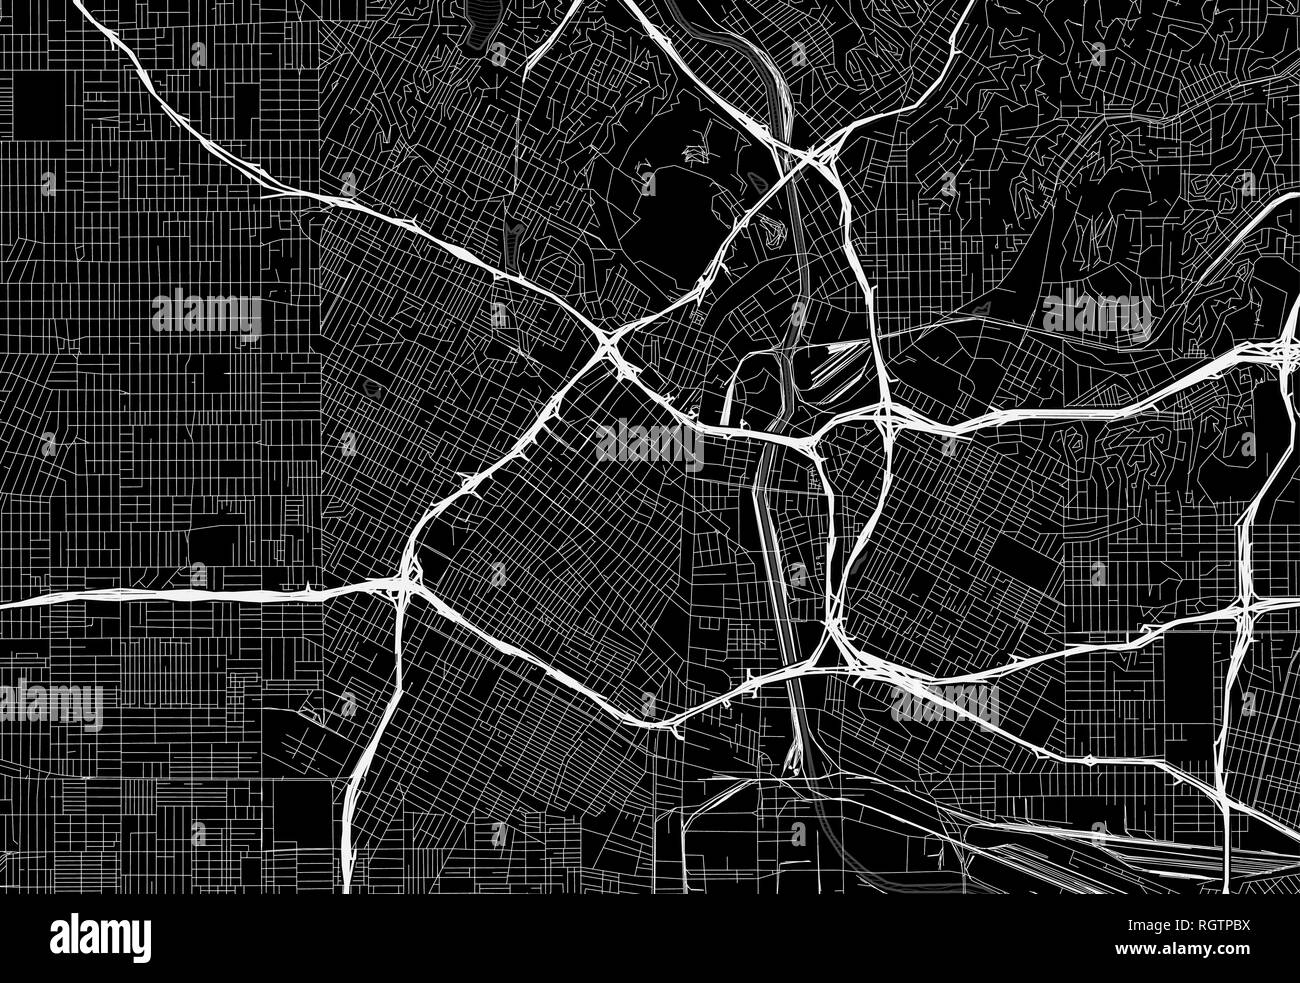 Carte noire du centre-ville de Los Angeles, États-Unis d'Amérique ce vecteur artmap est créé comme un arrière-plan décoratif ou un signe de voyage unique. Illustration de Vecteur